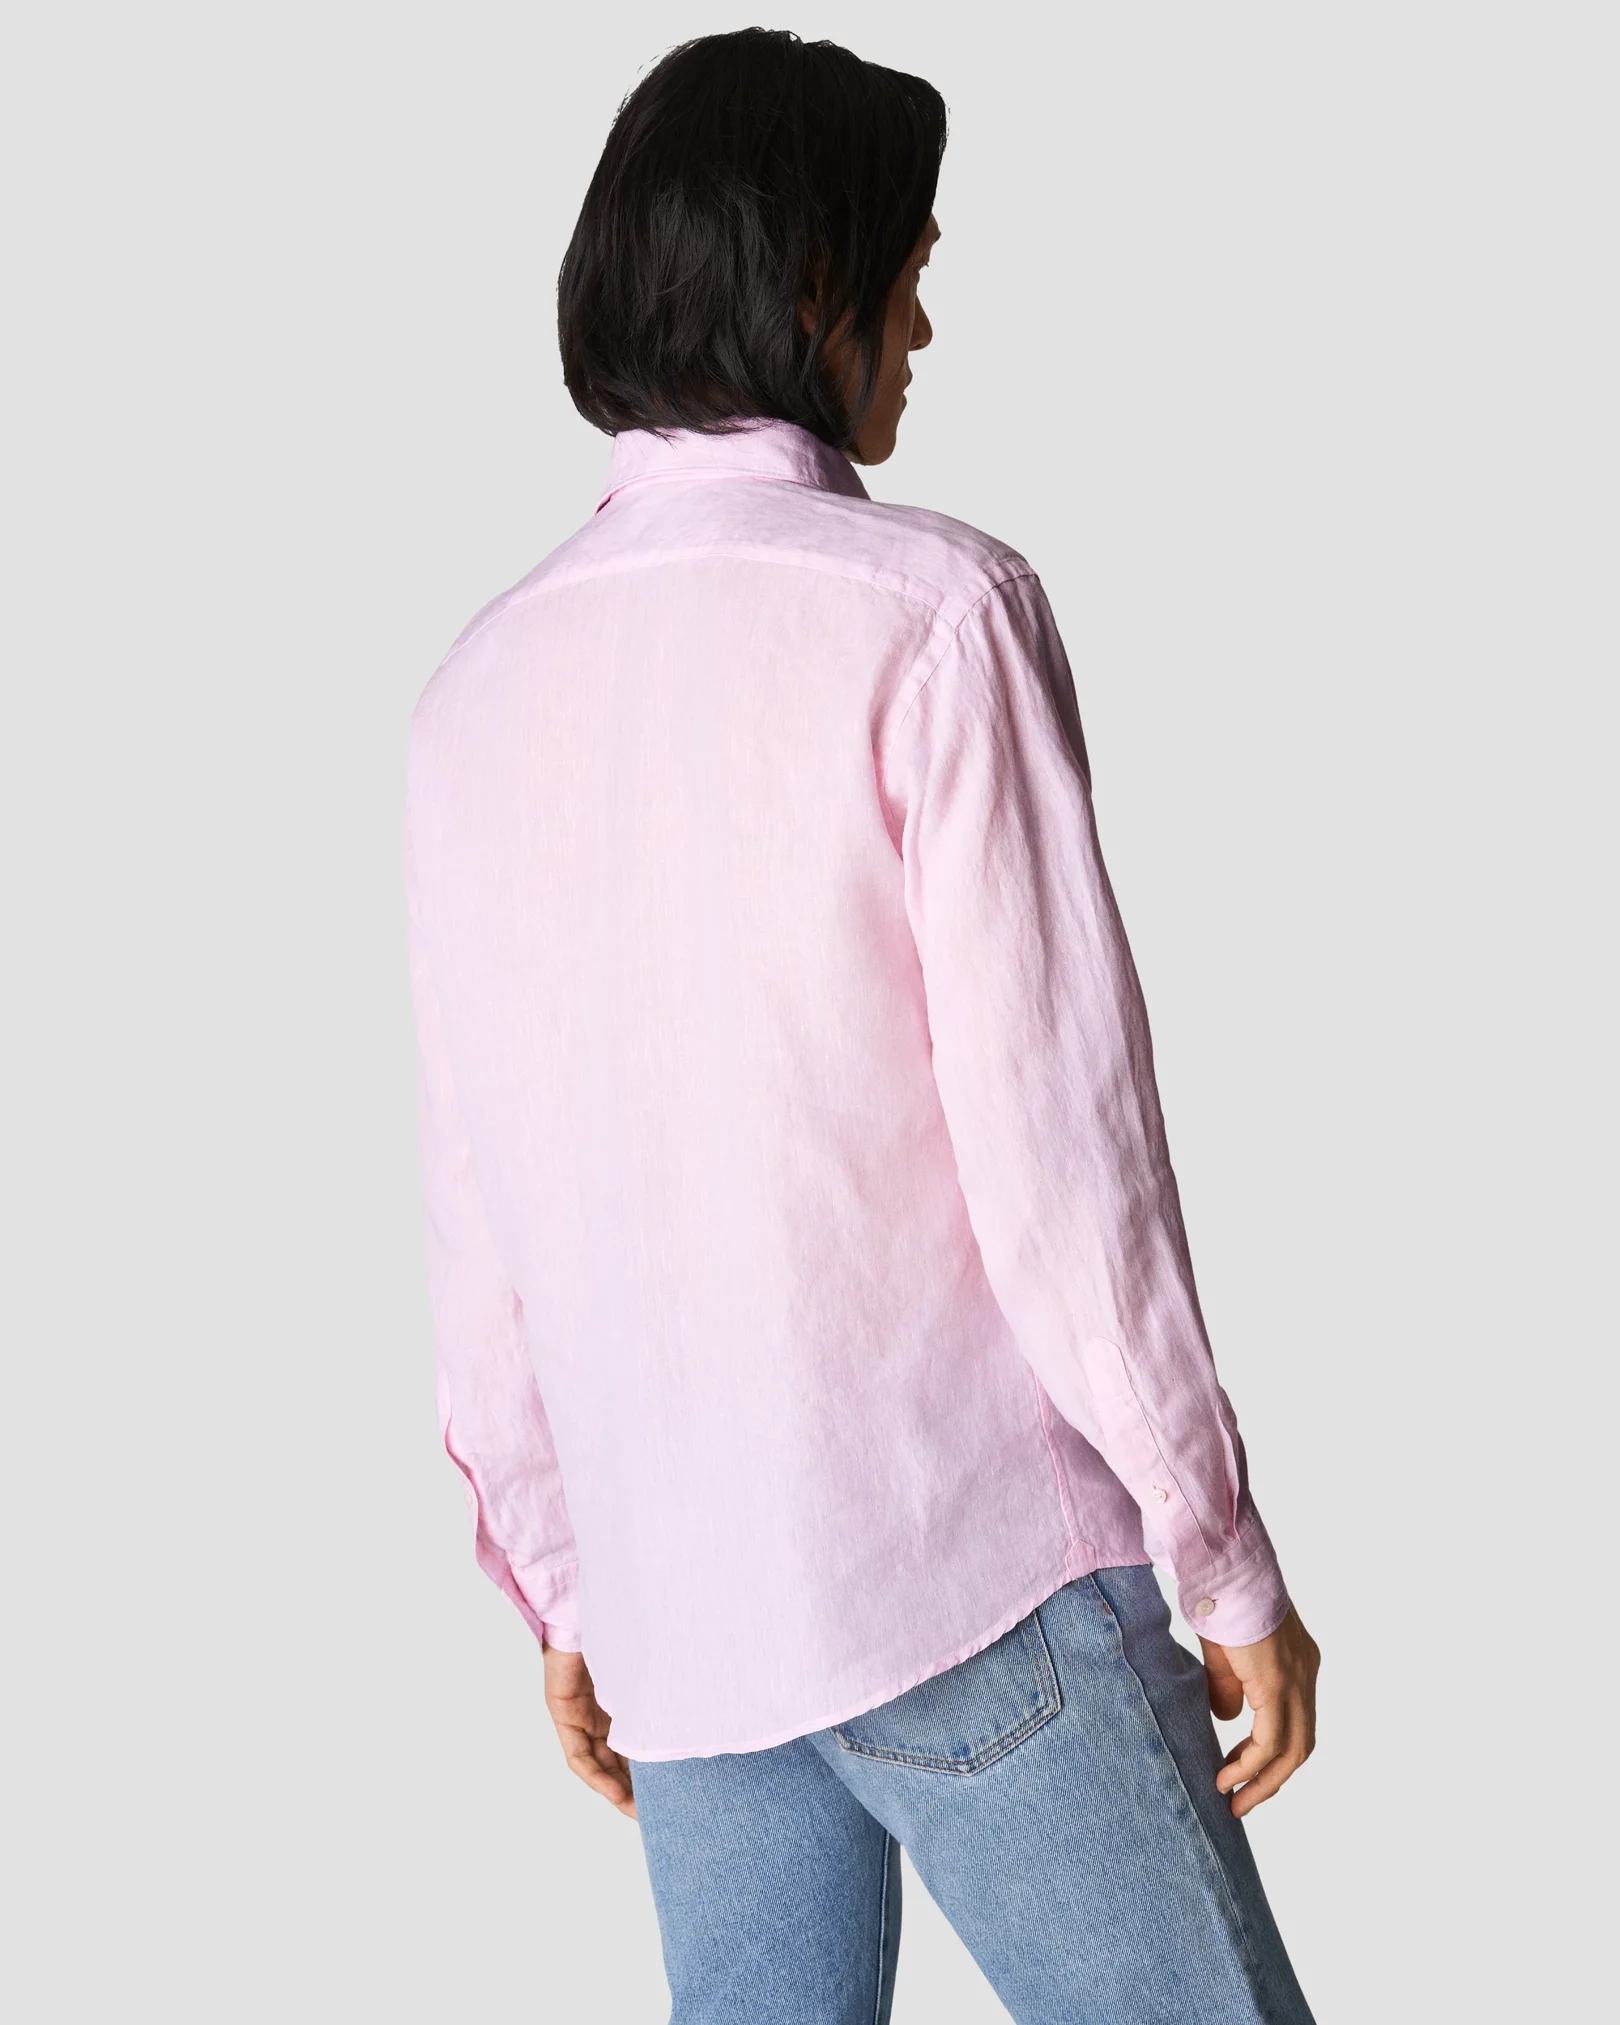 Eton - pink linen